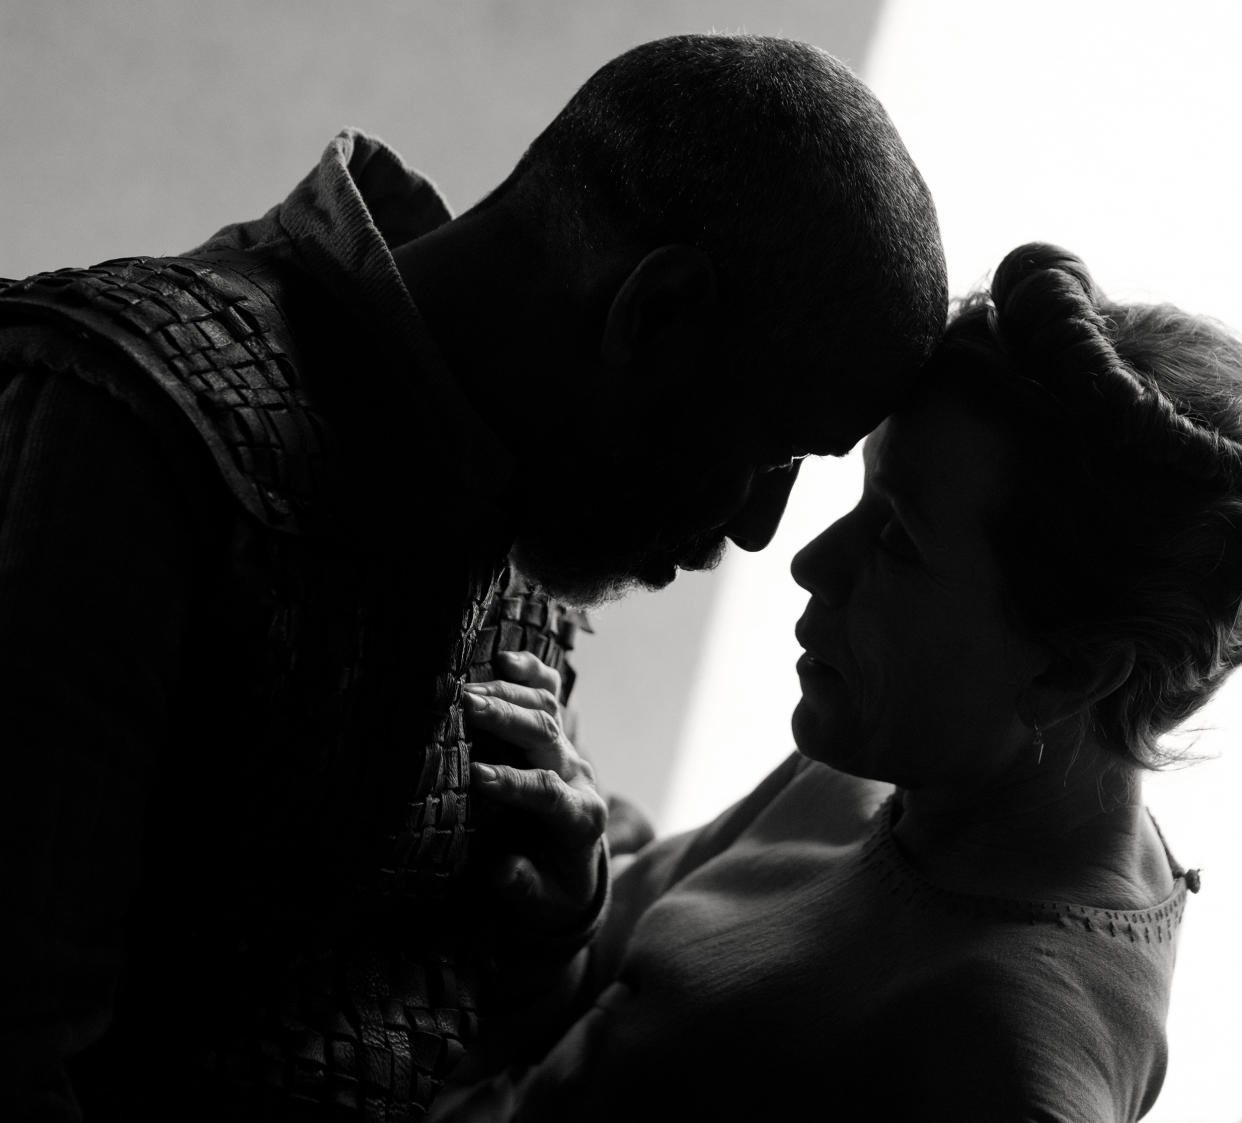 Denzel Washington as Macbeth and Frances McDormand as Lady Macbeth. (Apple TV+)